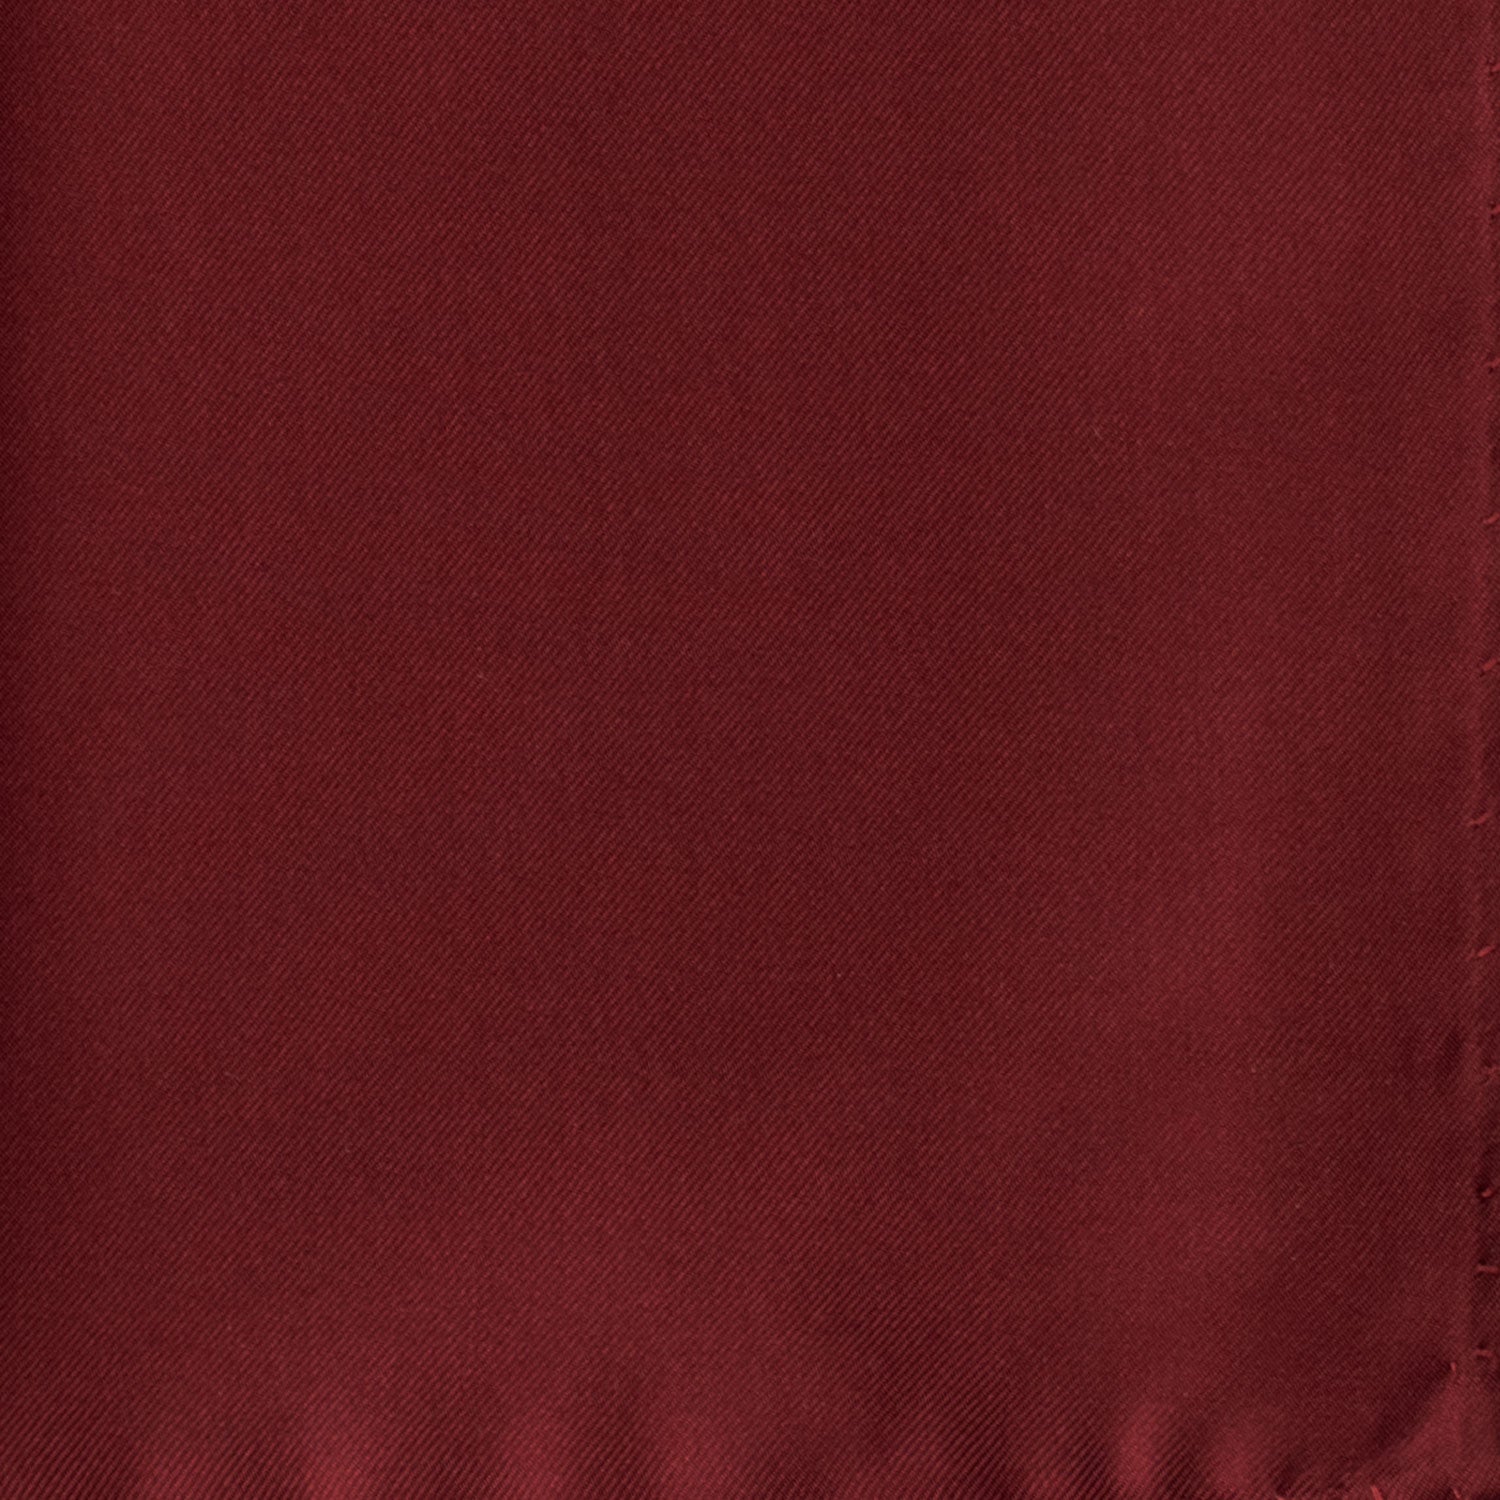 Fazzoletto da Taschino Vintage di Seta Bordeaux Tinta Unita POCV838 Dettaglio